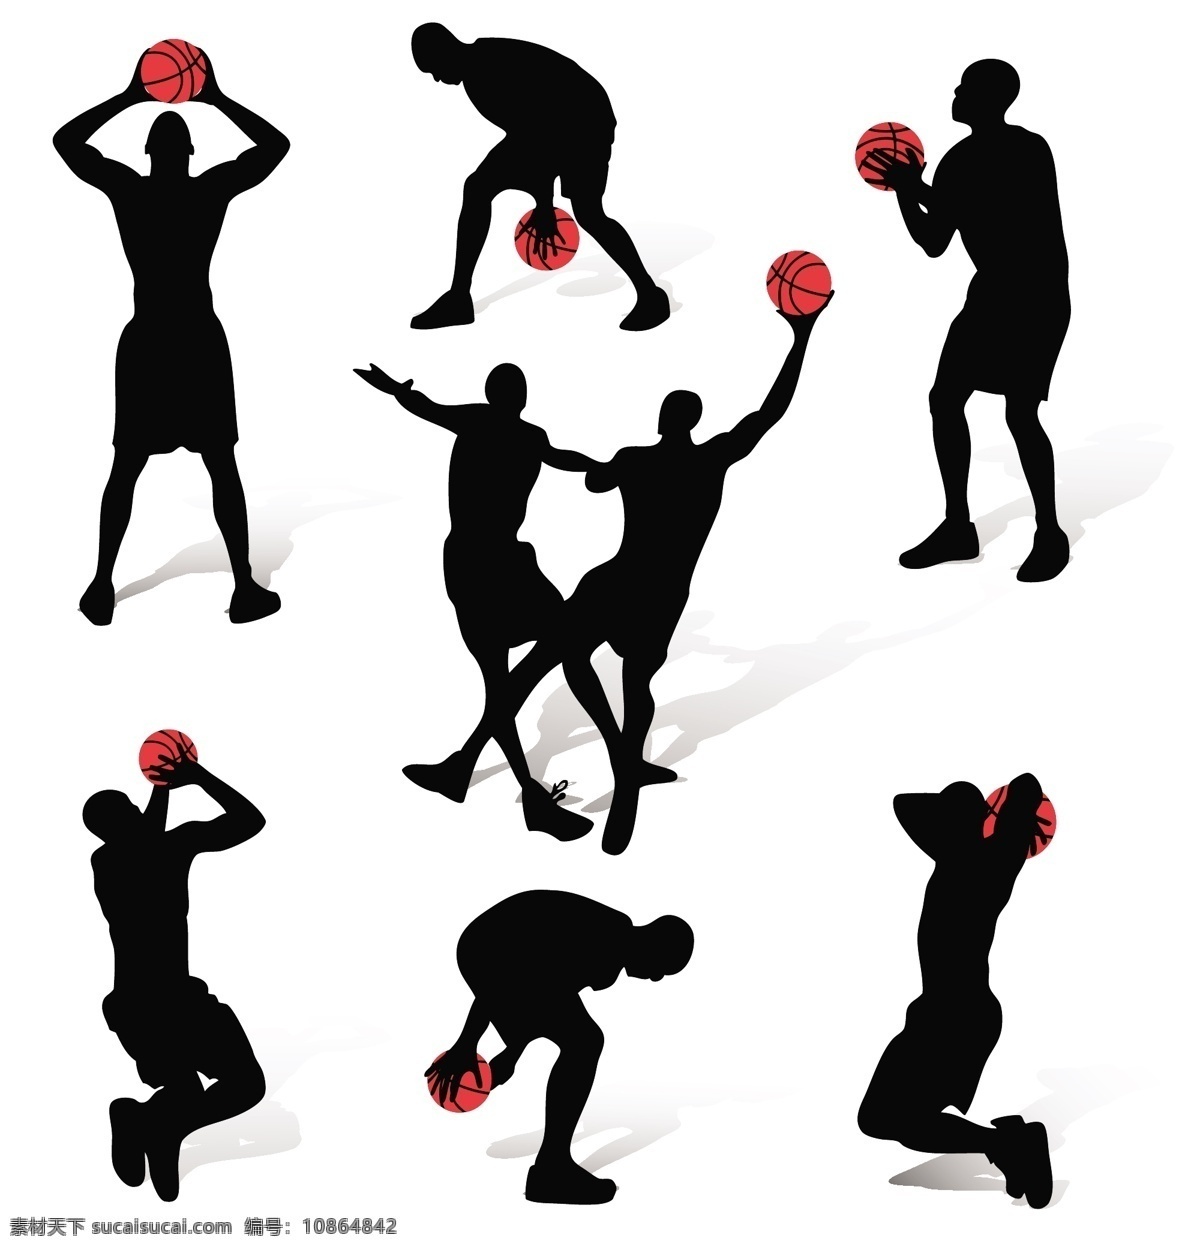 篮球 运动 人物 动作 剪影 矢量 扣篮 球 人物剪影 体育 运动员 运球 矢量图 日常生活